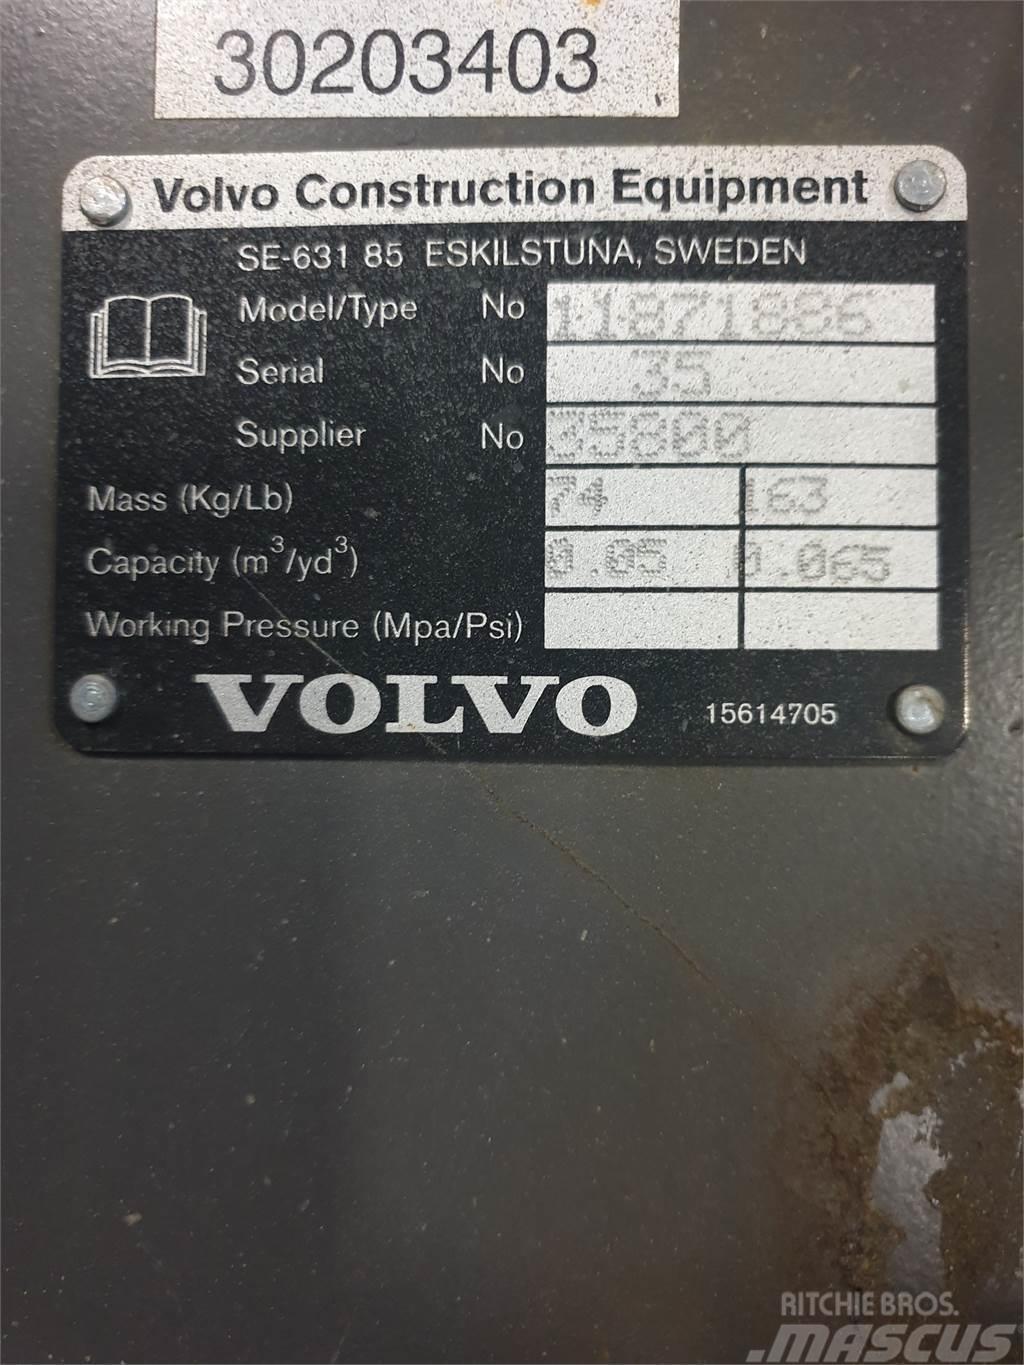 Volvo Kabelskopa S40 300mm Žlice